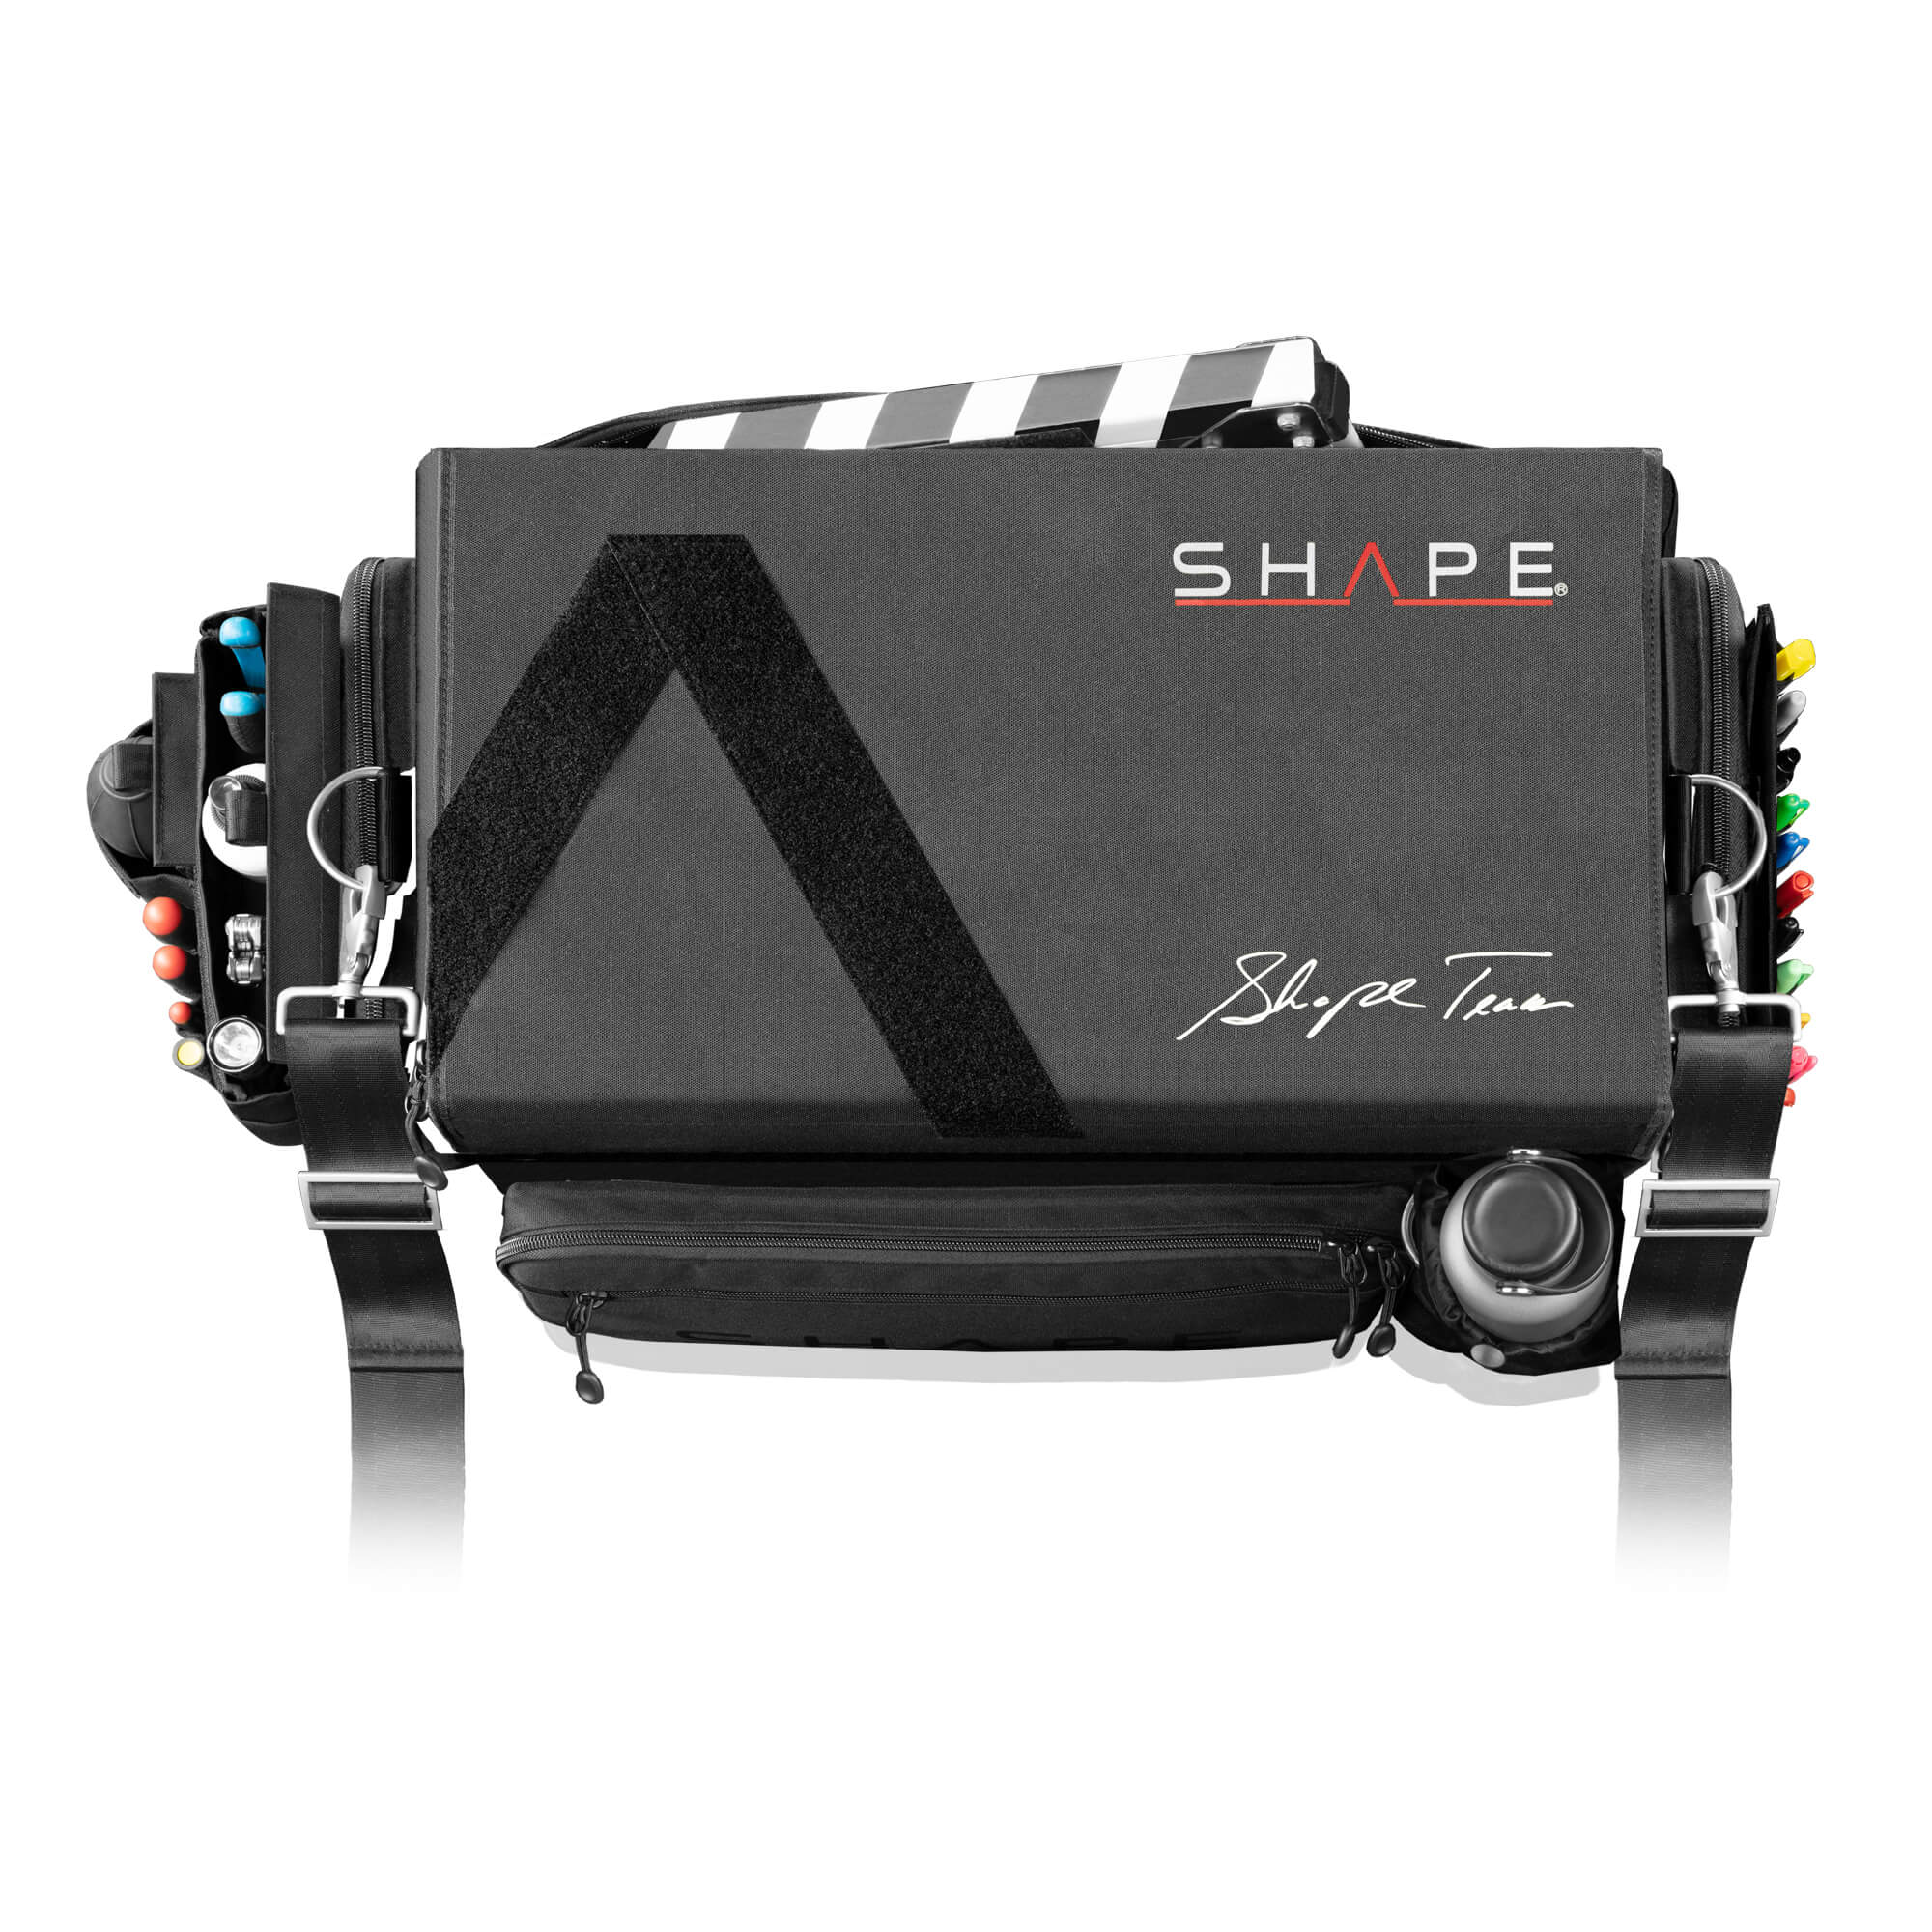 SHAPE camera bag - SHAPE